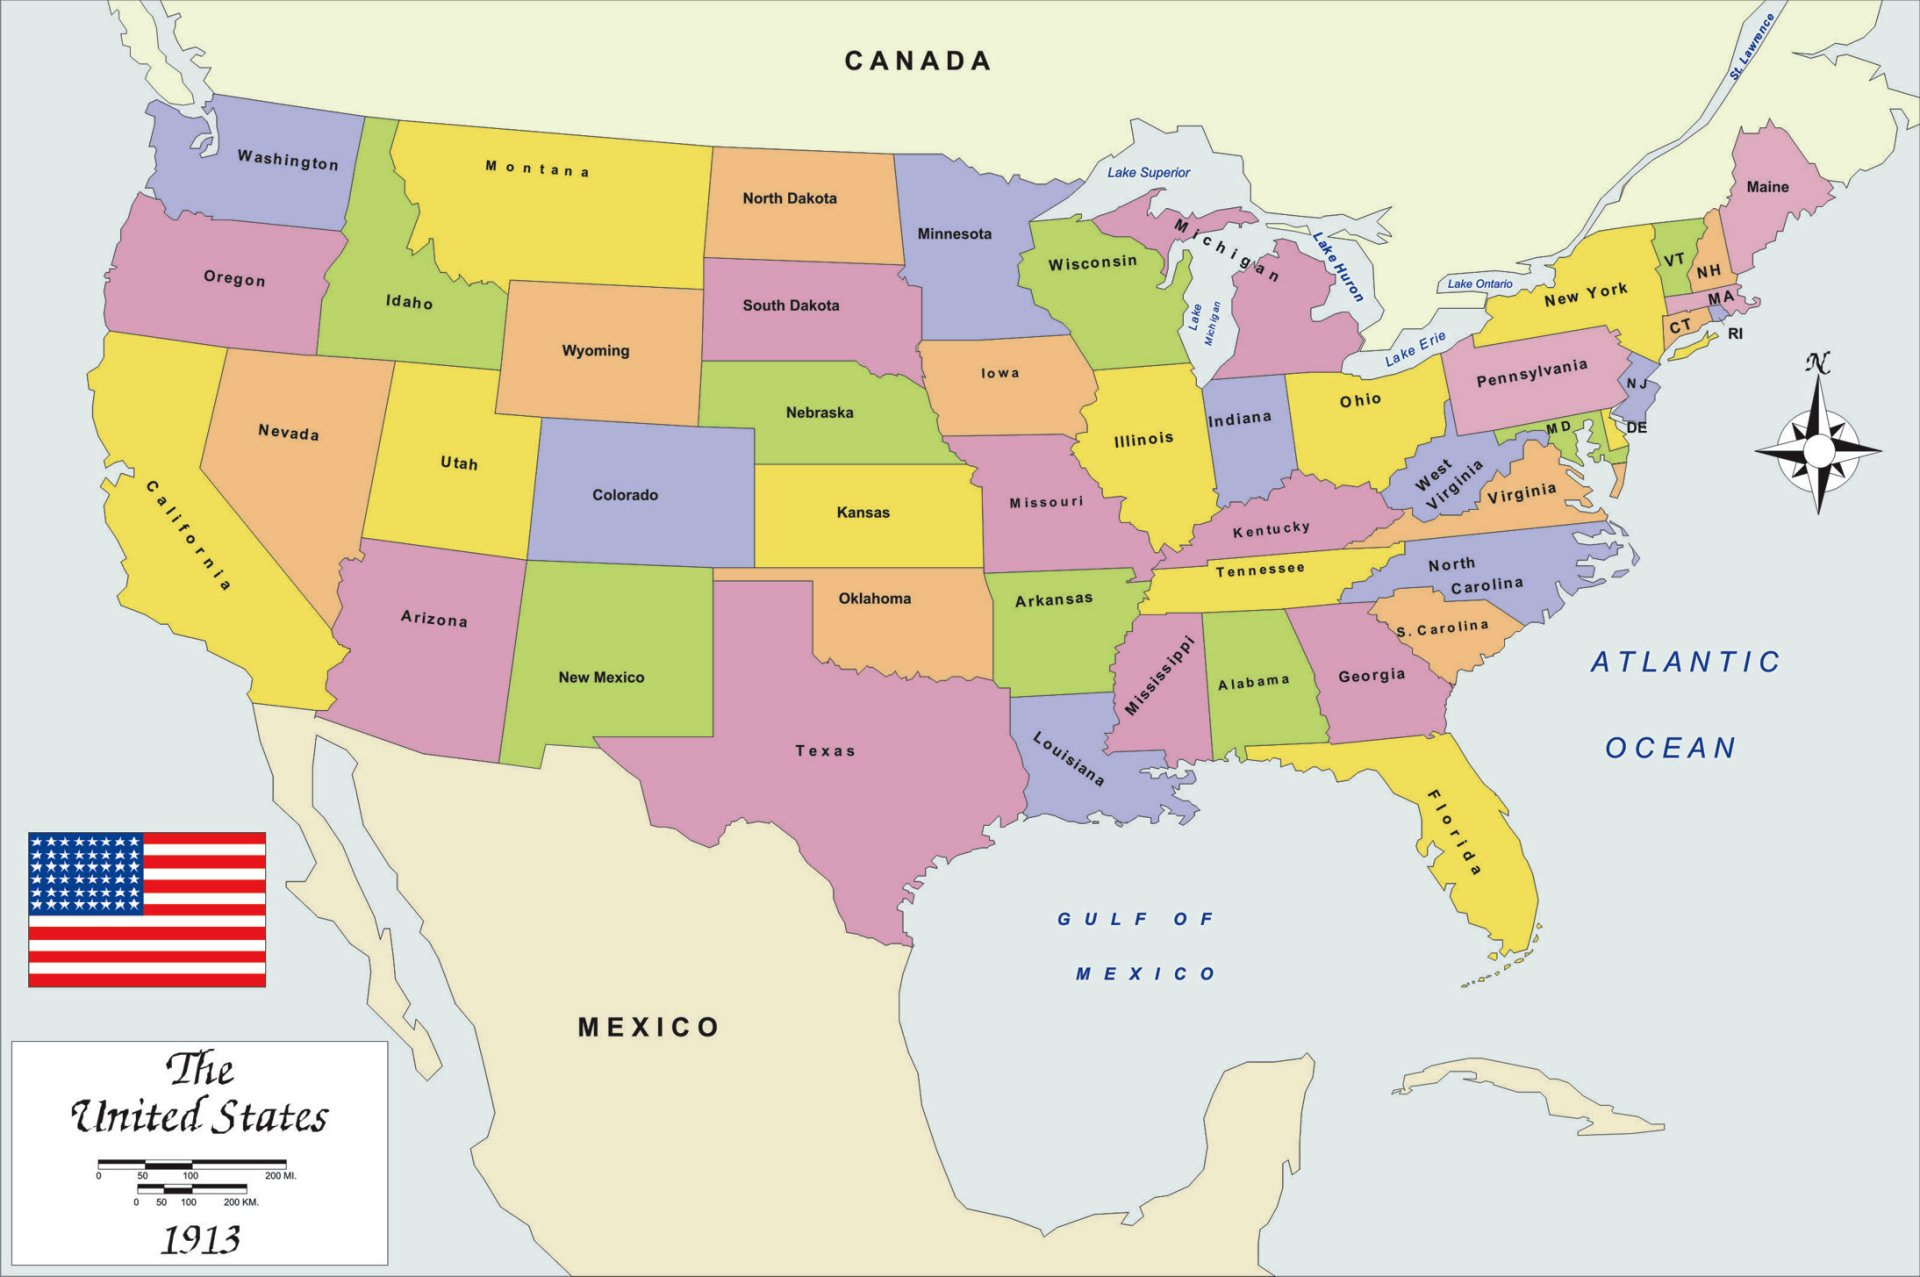 Map Of The Usa HD Wallpaper Sfondi 2188x1455 ID 687664 